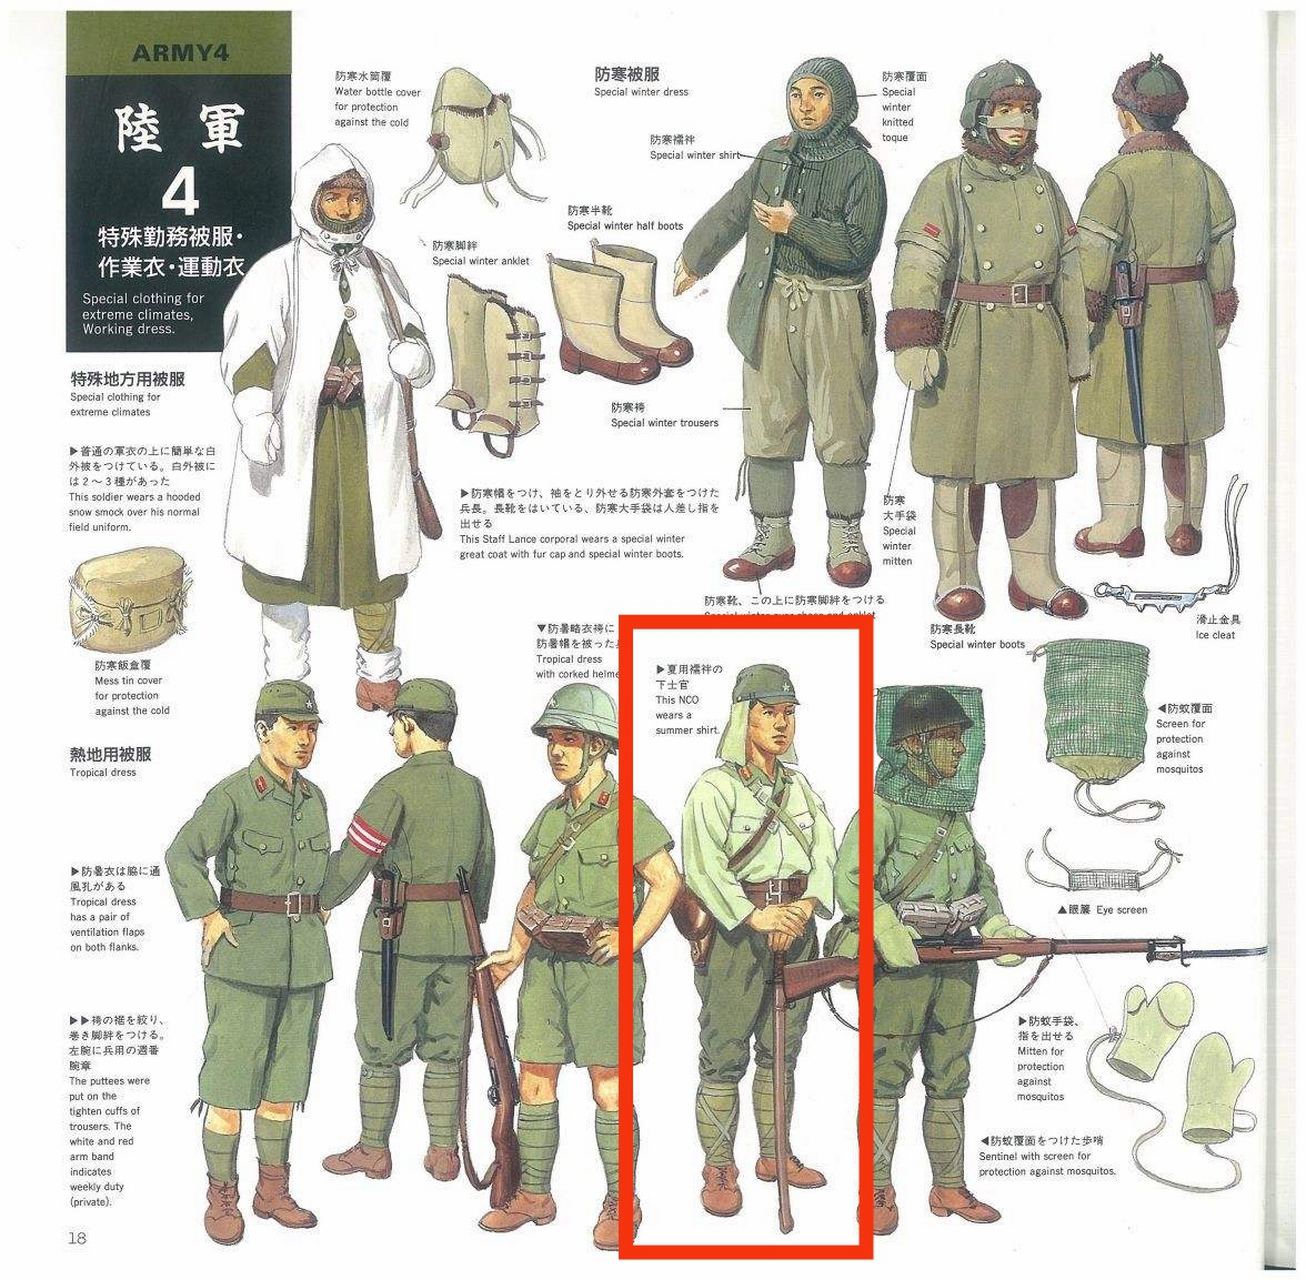 日军军帽后面的布片称为军帽垂布,简称帽垂